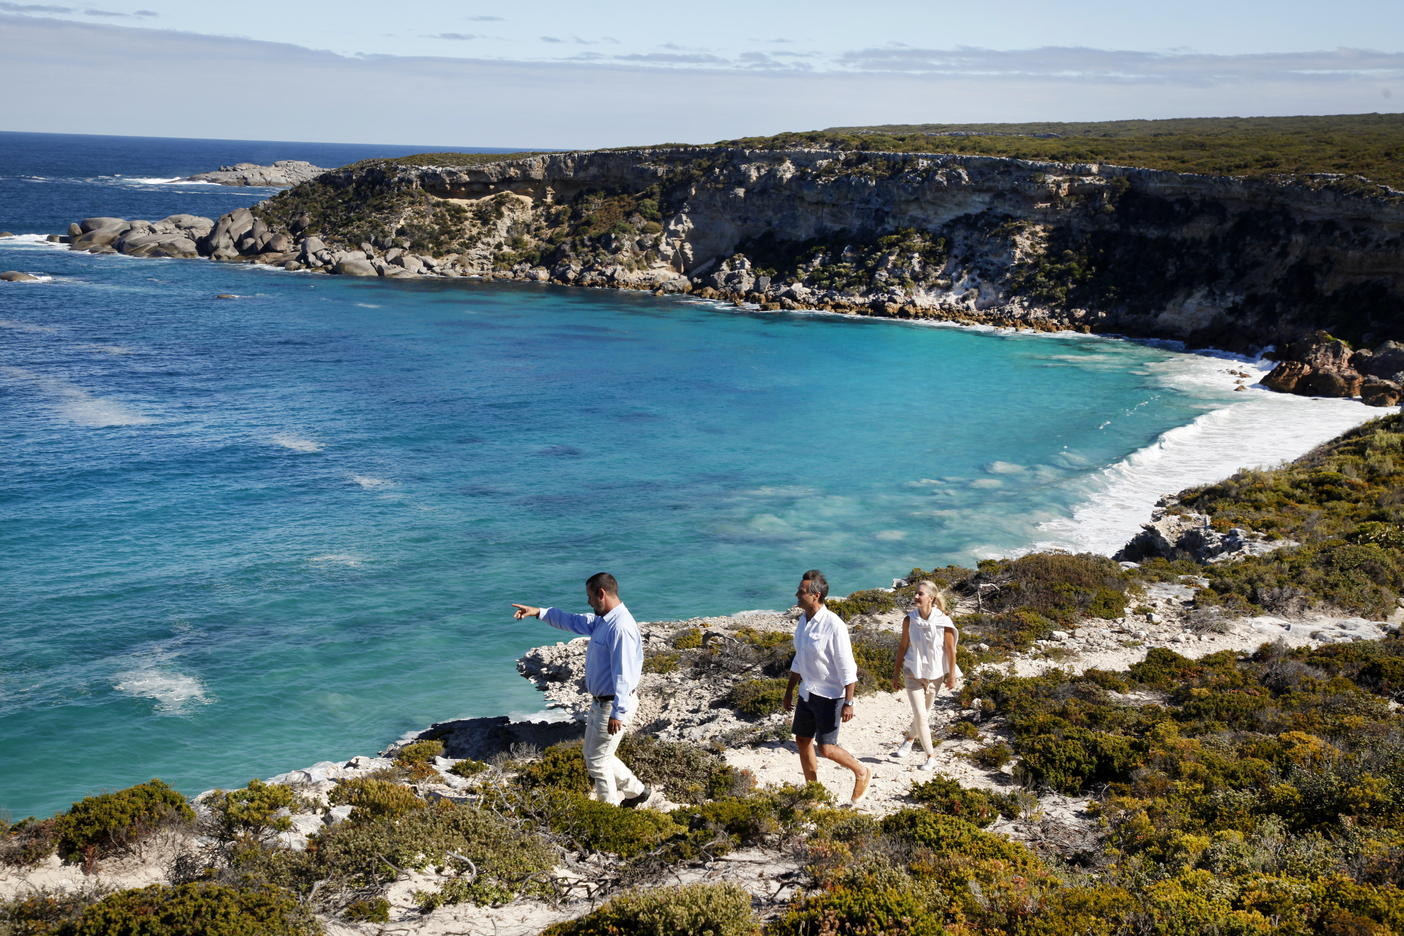 Southern Ocean Lodge 的海岸悬崖步道健行活动，带着游客探索袋鼠岛海岸自然生态景观。